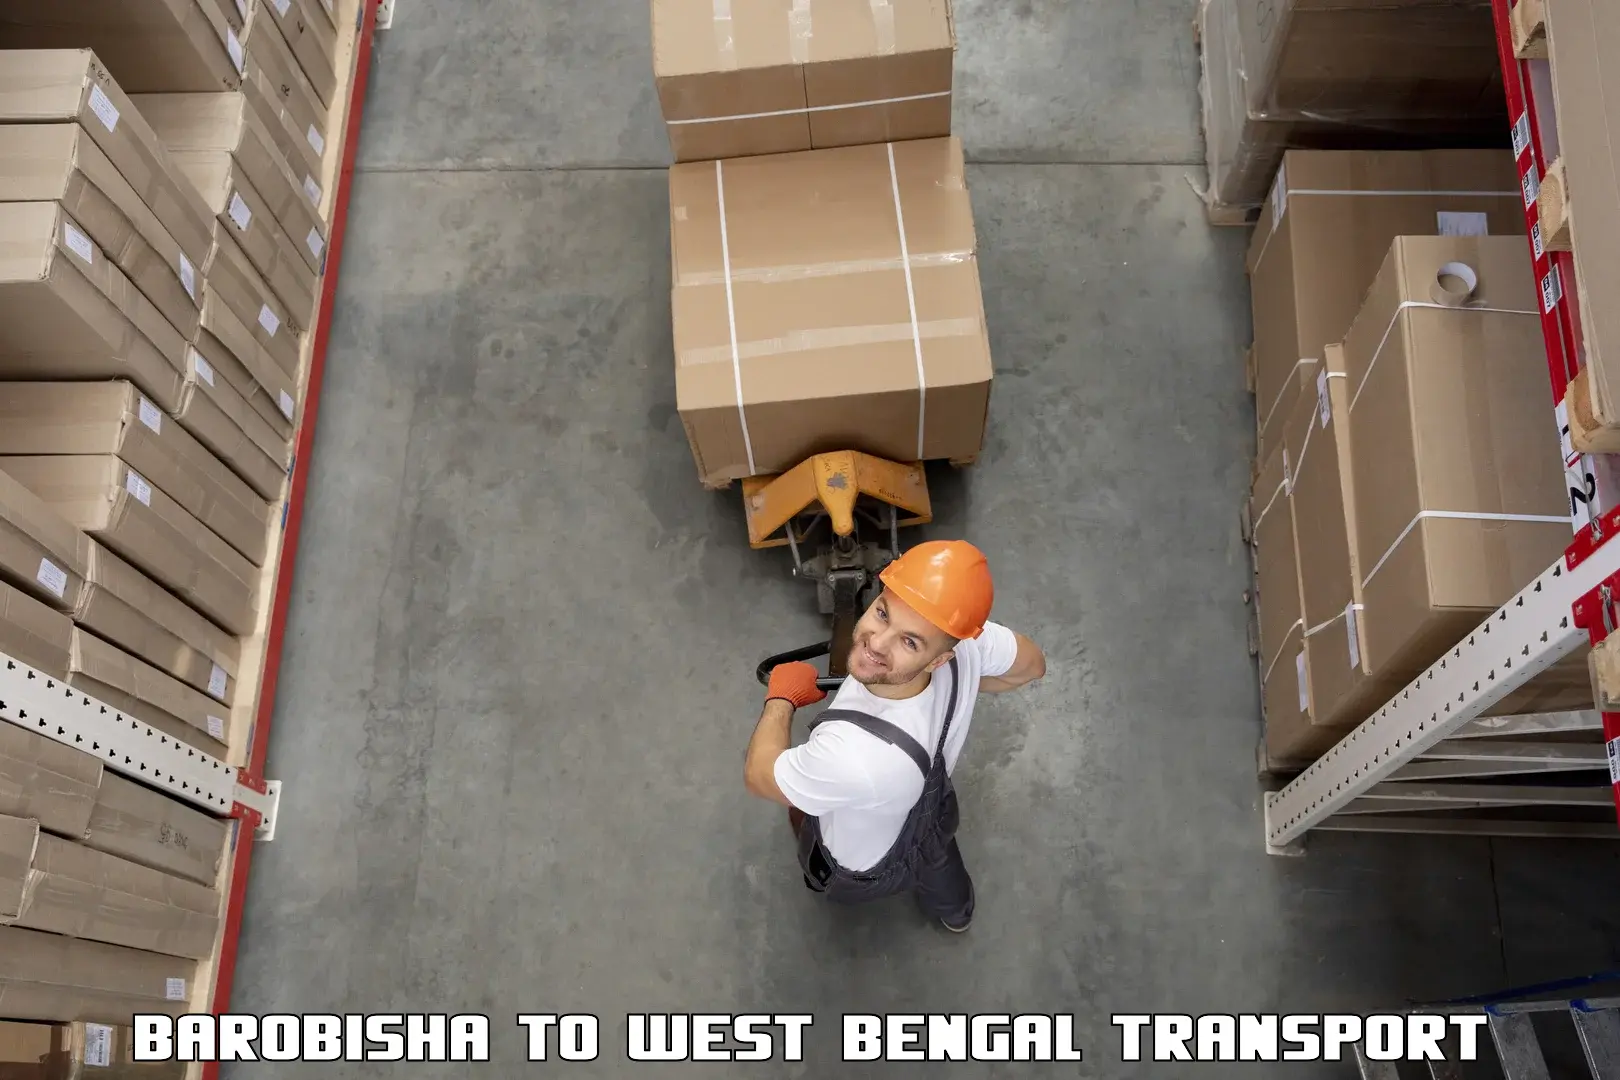 Nearest transport service Barobisha to Bankura